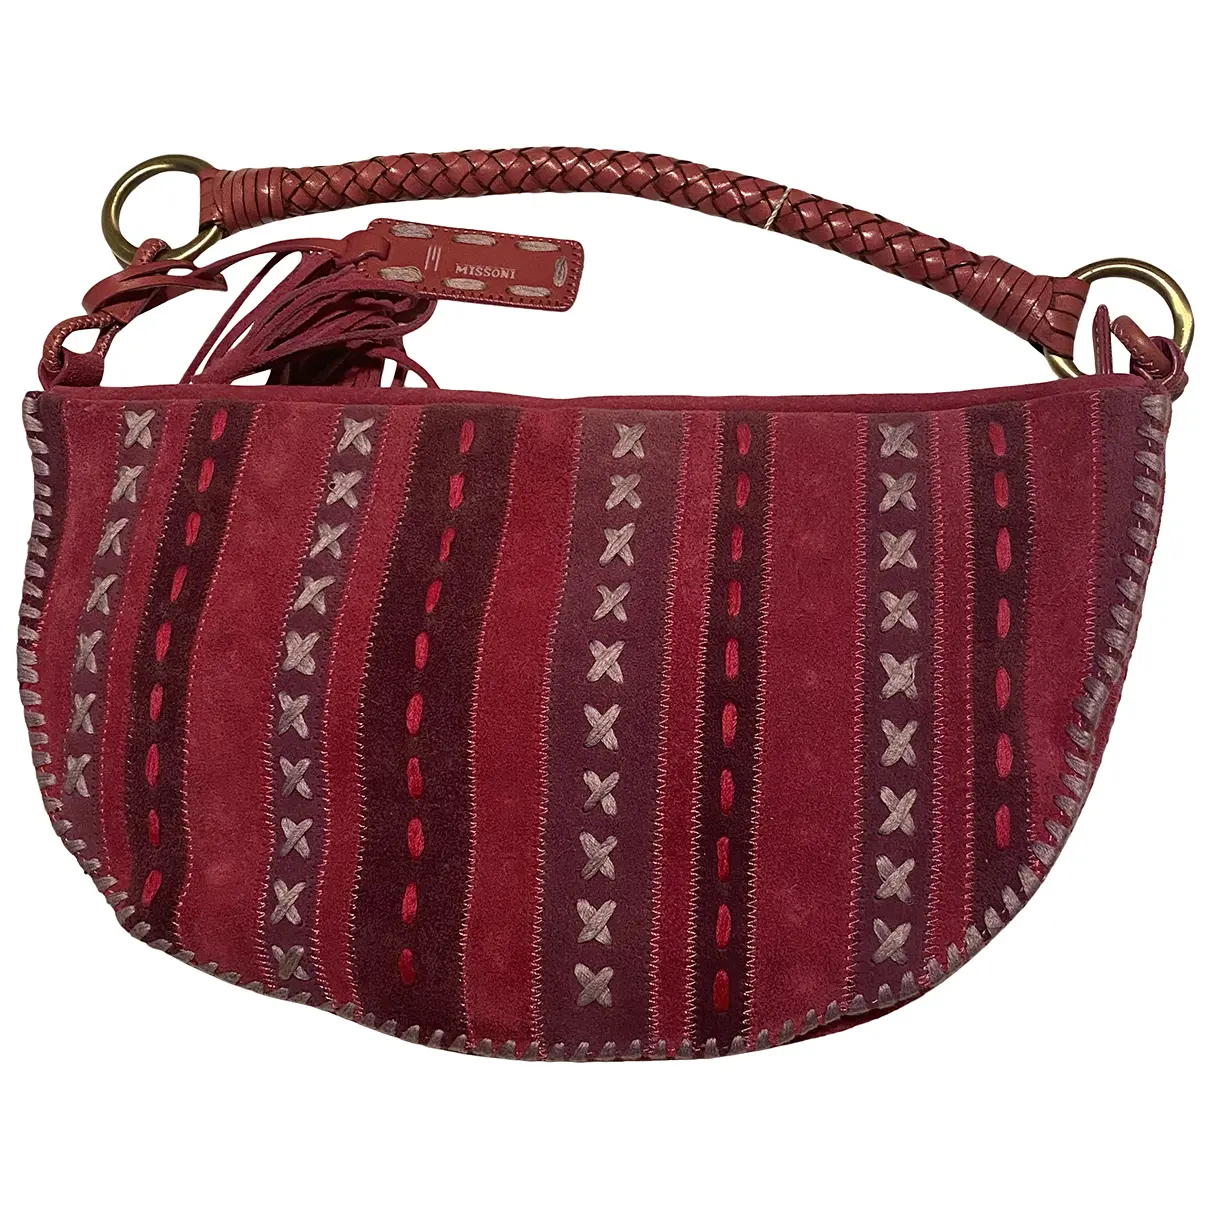 Leather handbag M Missoni - Vintage